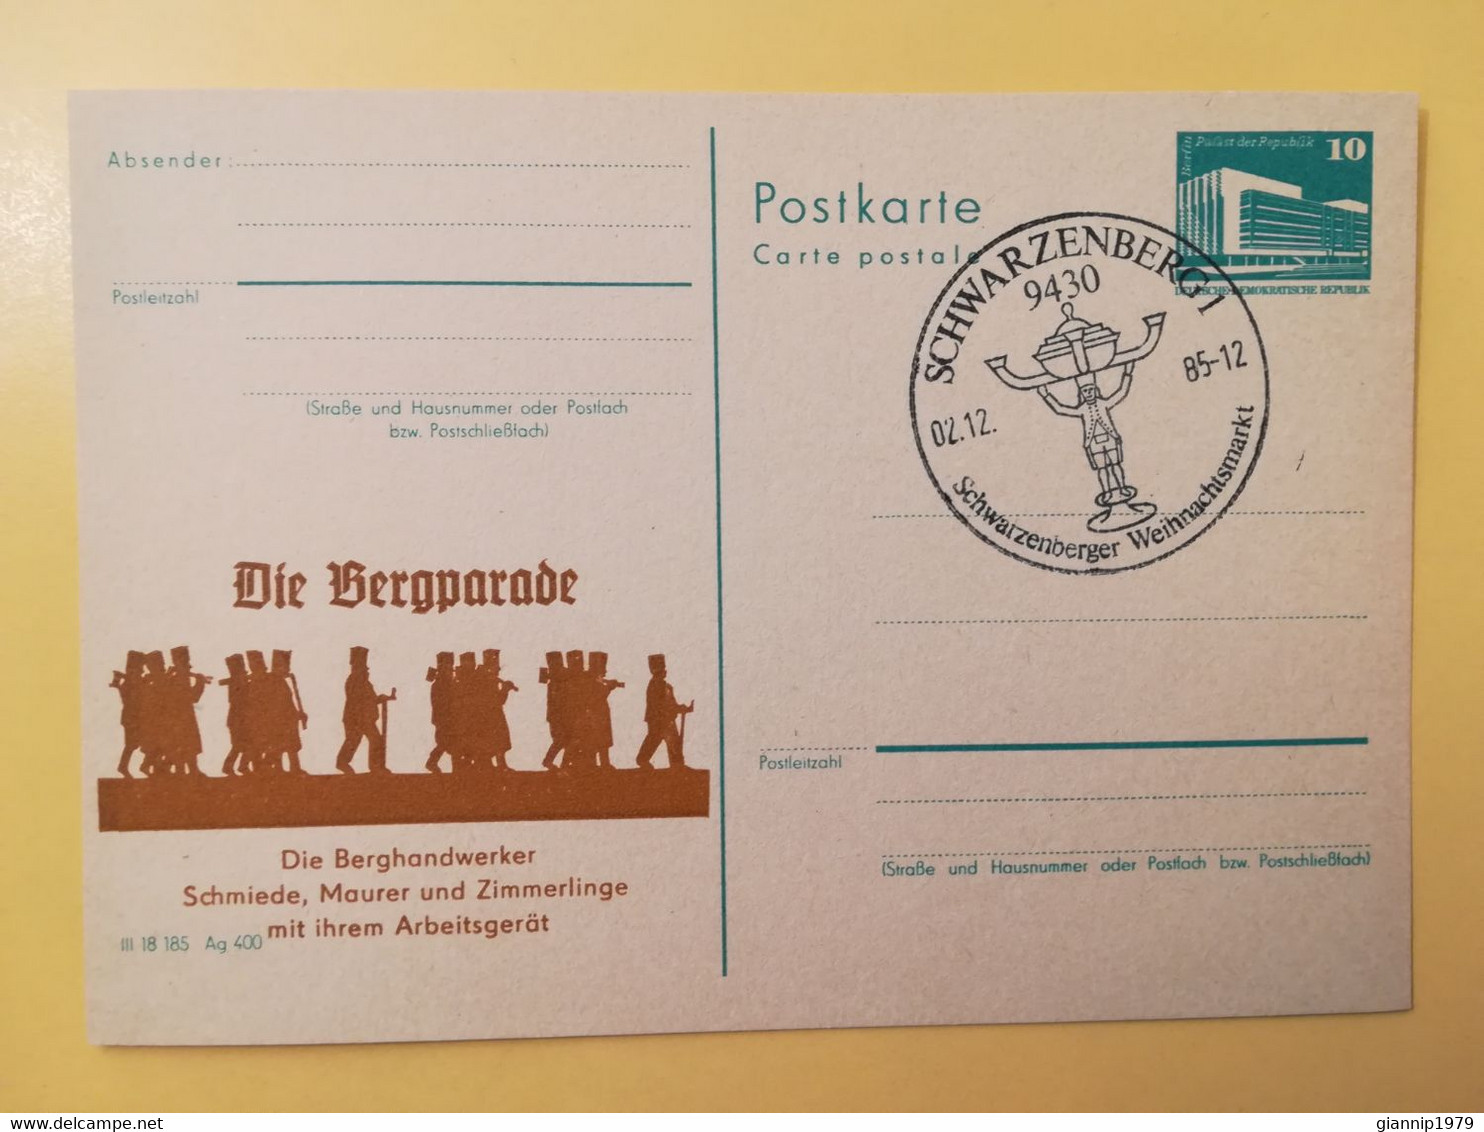 1985 INTERO CARTOLINA POSTALE POSTCARDS FDC GERMANIA DEUTSCHE DDR DIE BERGPARADE OBLITERE' SCHWARZENBERG 1 - Postkarten - Ungebraucht